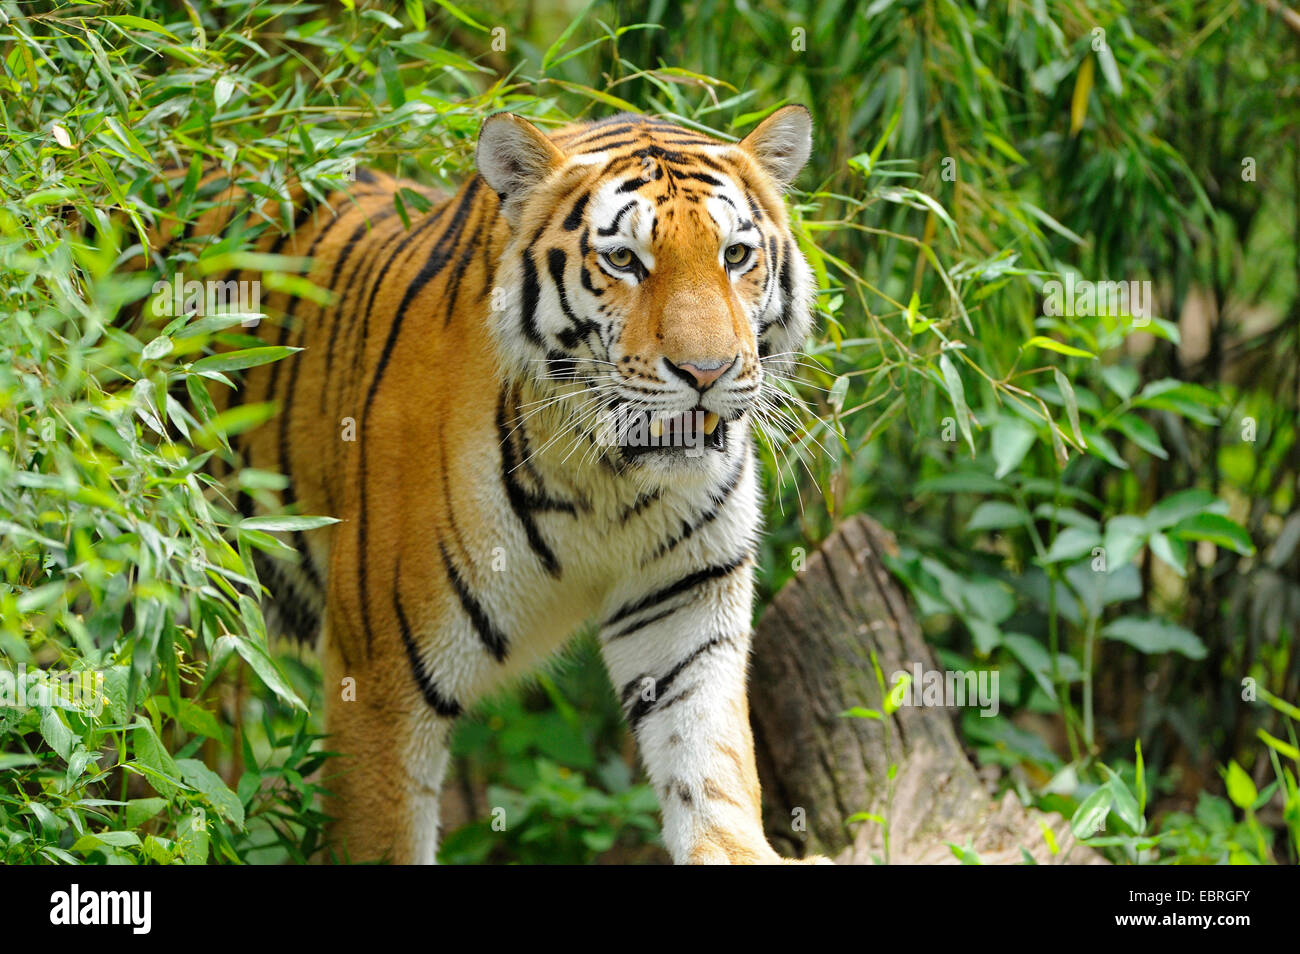 Siberian tiger, Amurian tiger (Panthera tigris altaica), with bamboo Stock Photo